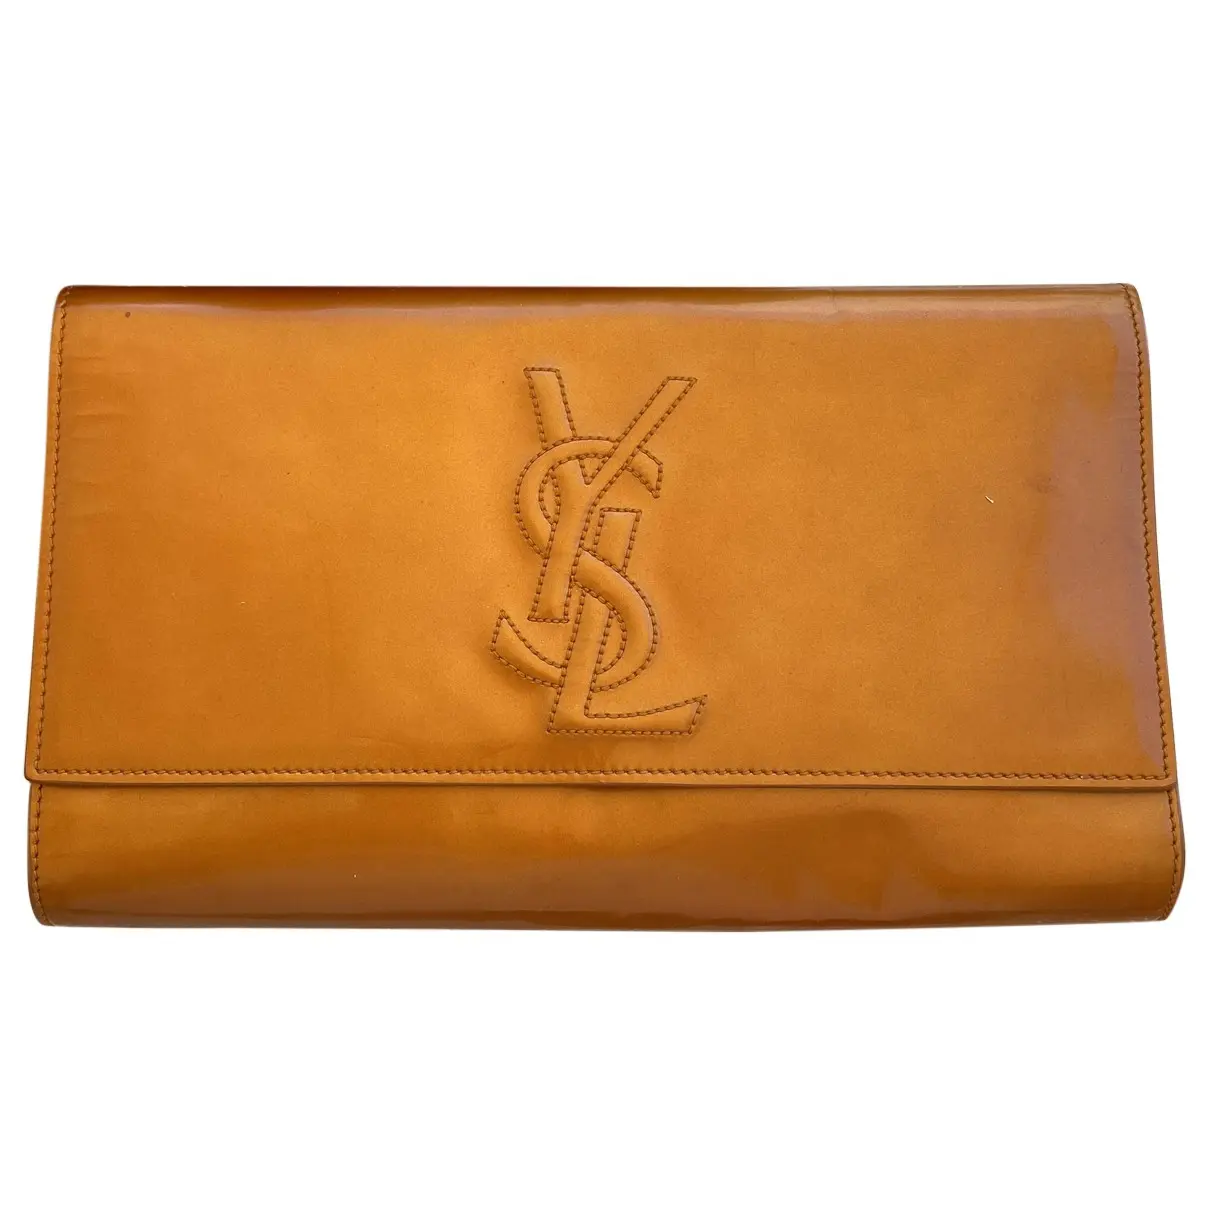 Patent leather clutch bag Saint Laurent